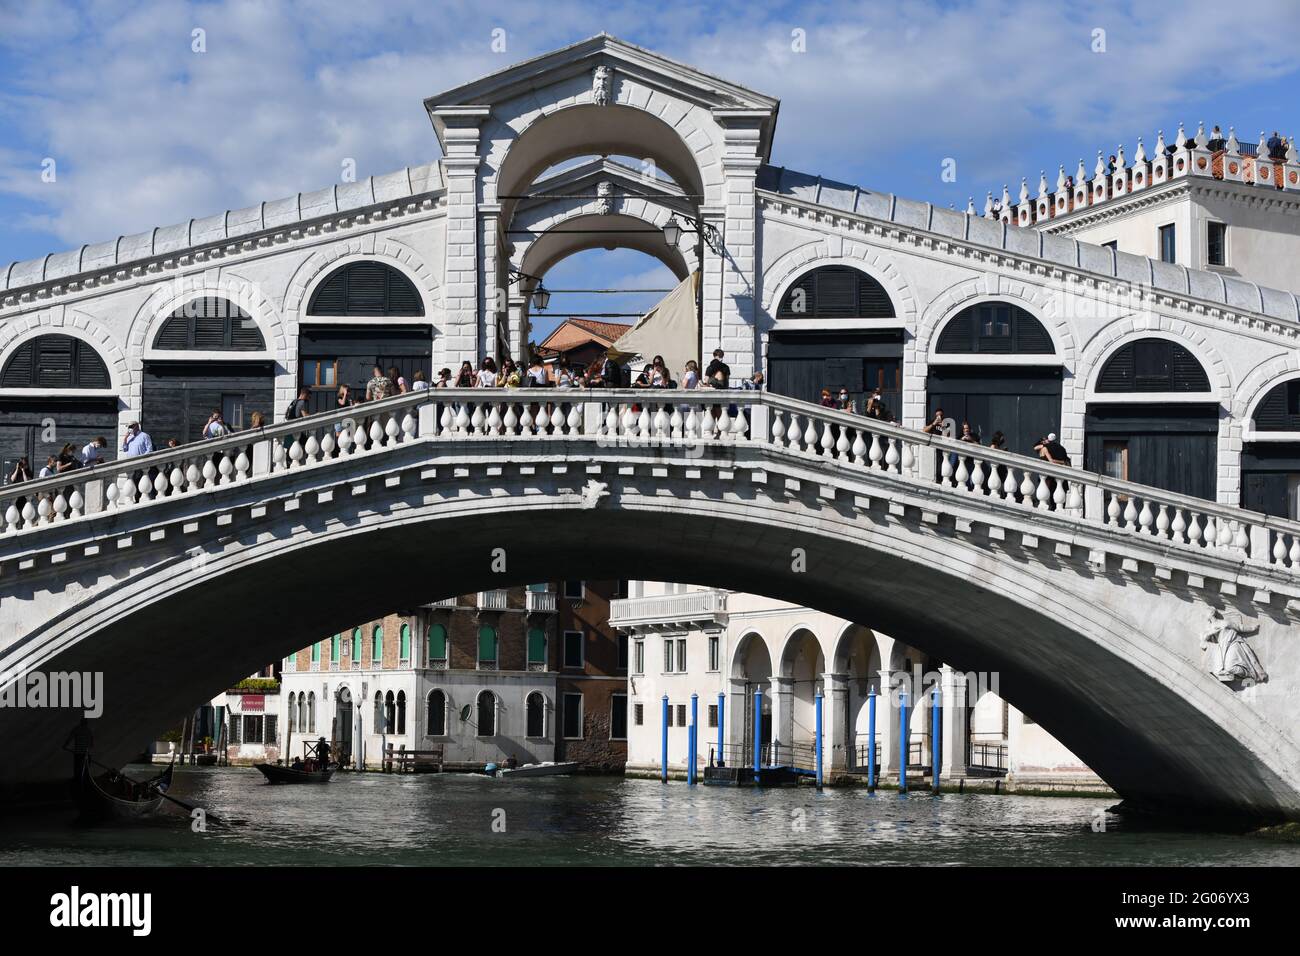 Rialtobrücke, eine der bekanntesten Sehenswürdigkeiten Venedigs, mit ersten Touristen nach Grenzöffnung zu Italien nach dem Covid bedingten Lock down Foto de stock